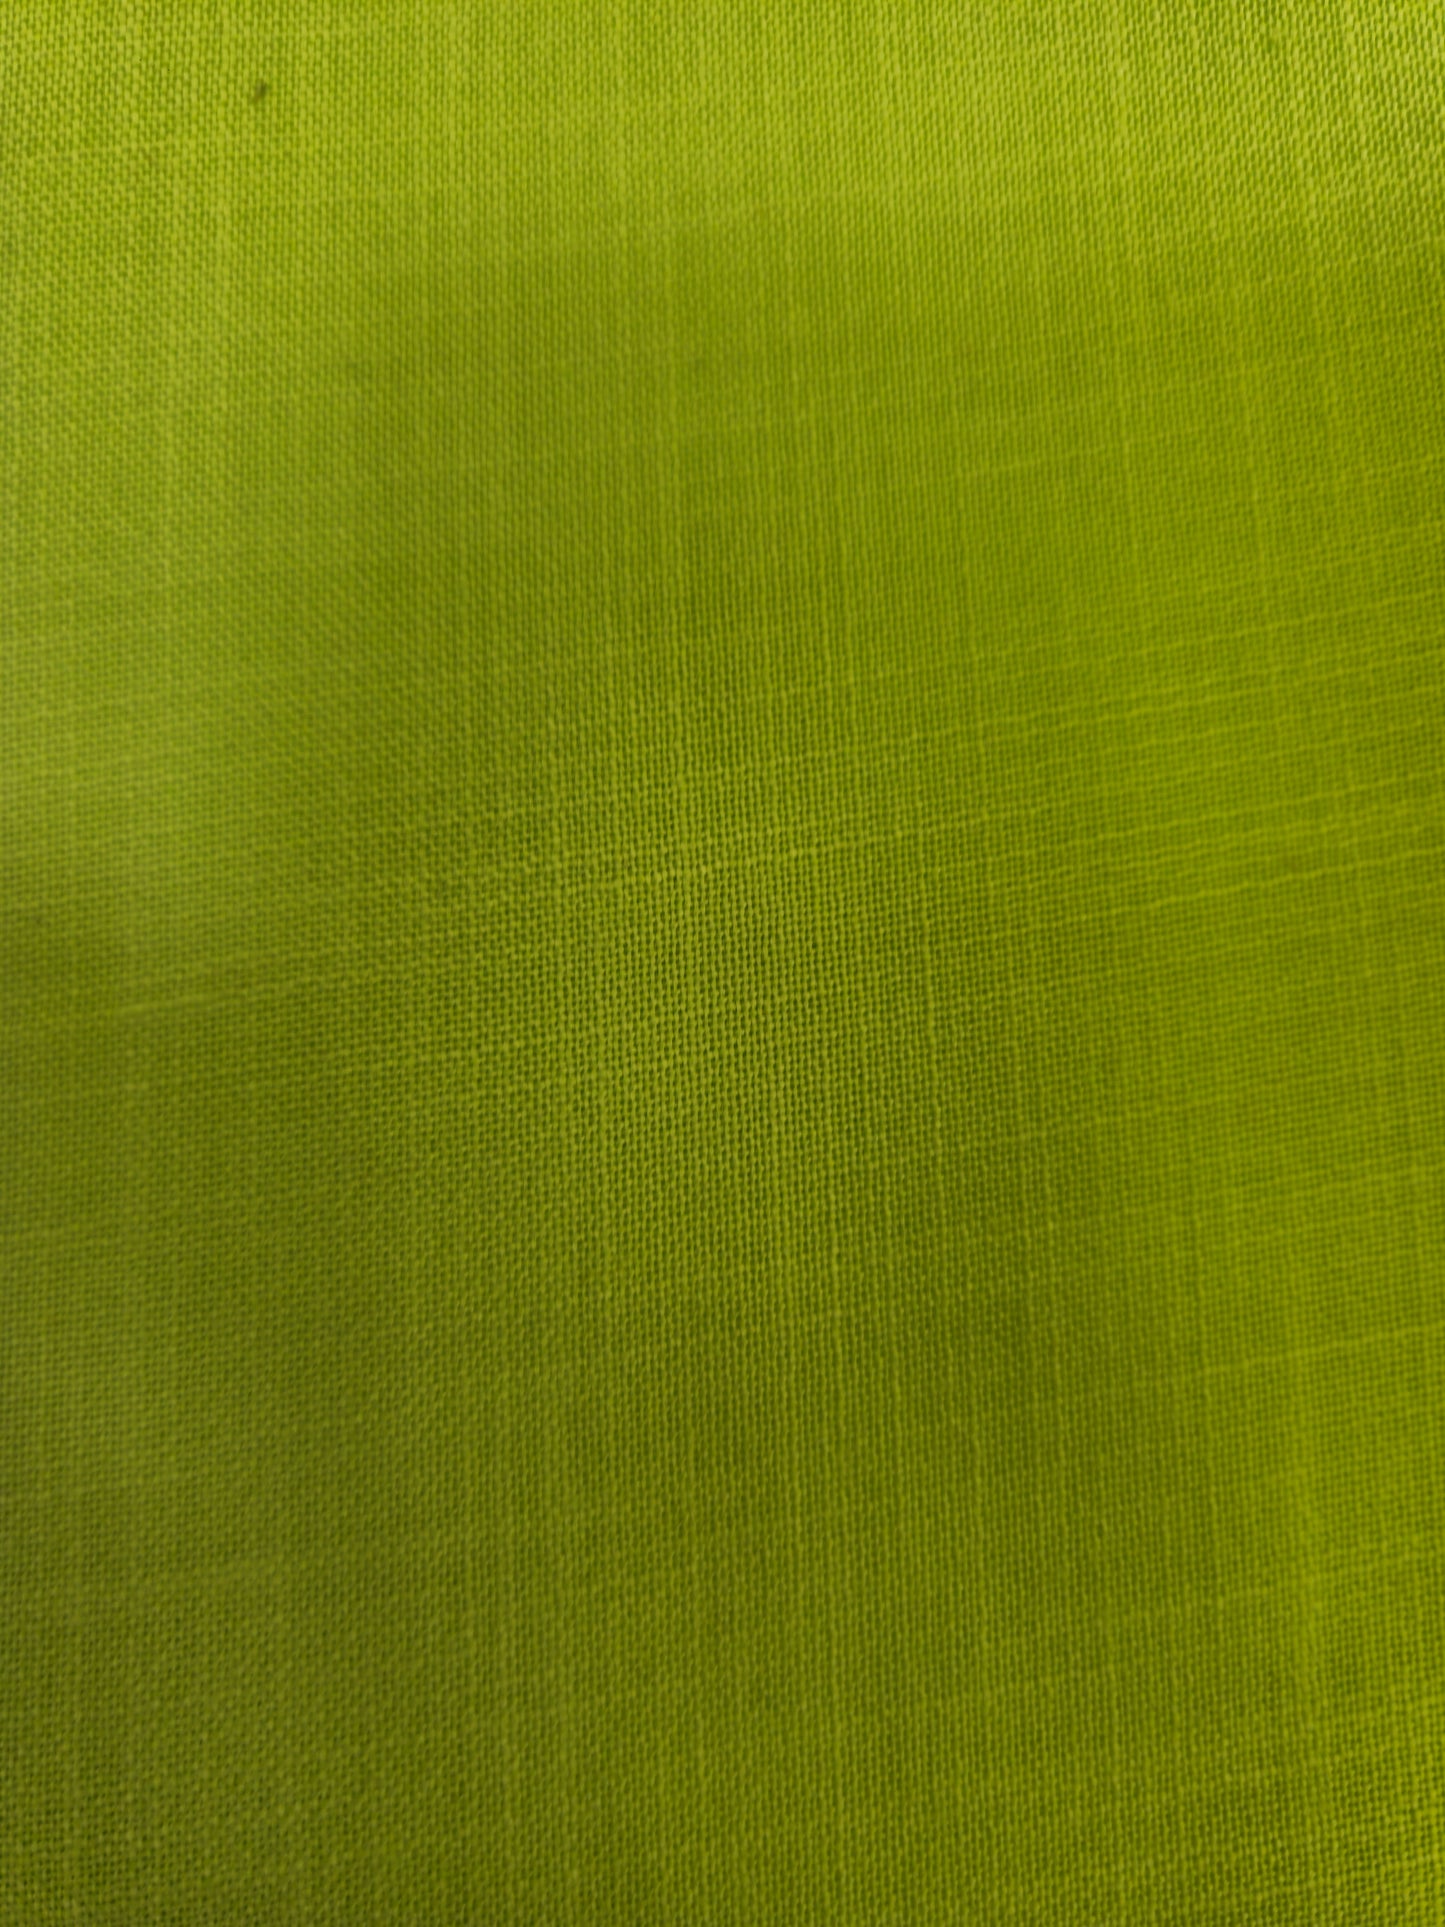 Aabandh's Sleevless Top - Warli ( Cotton Linen )